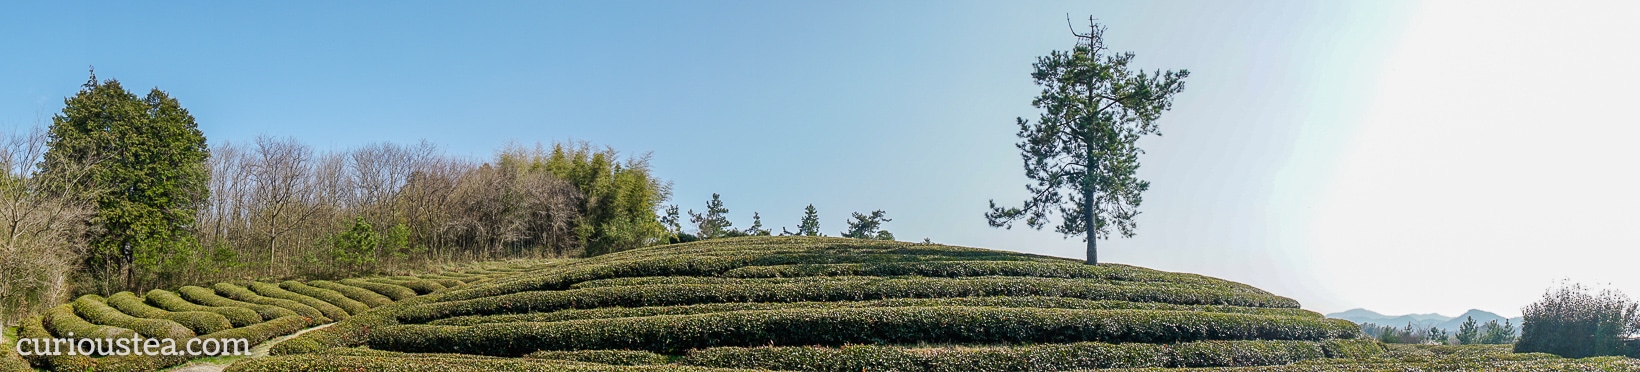 Boseong Tea Plantation, South Jeolla Province, South Korea 3